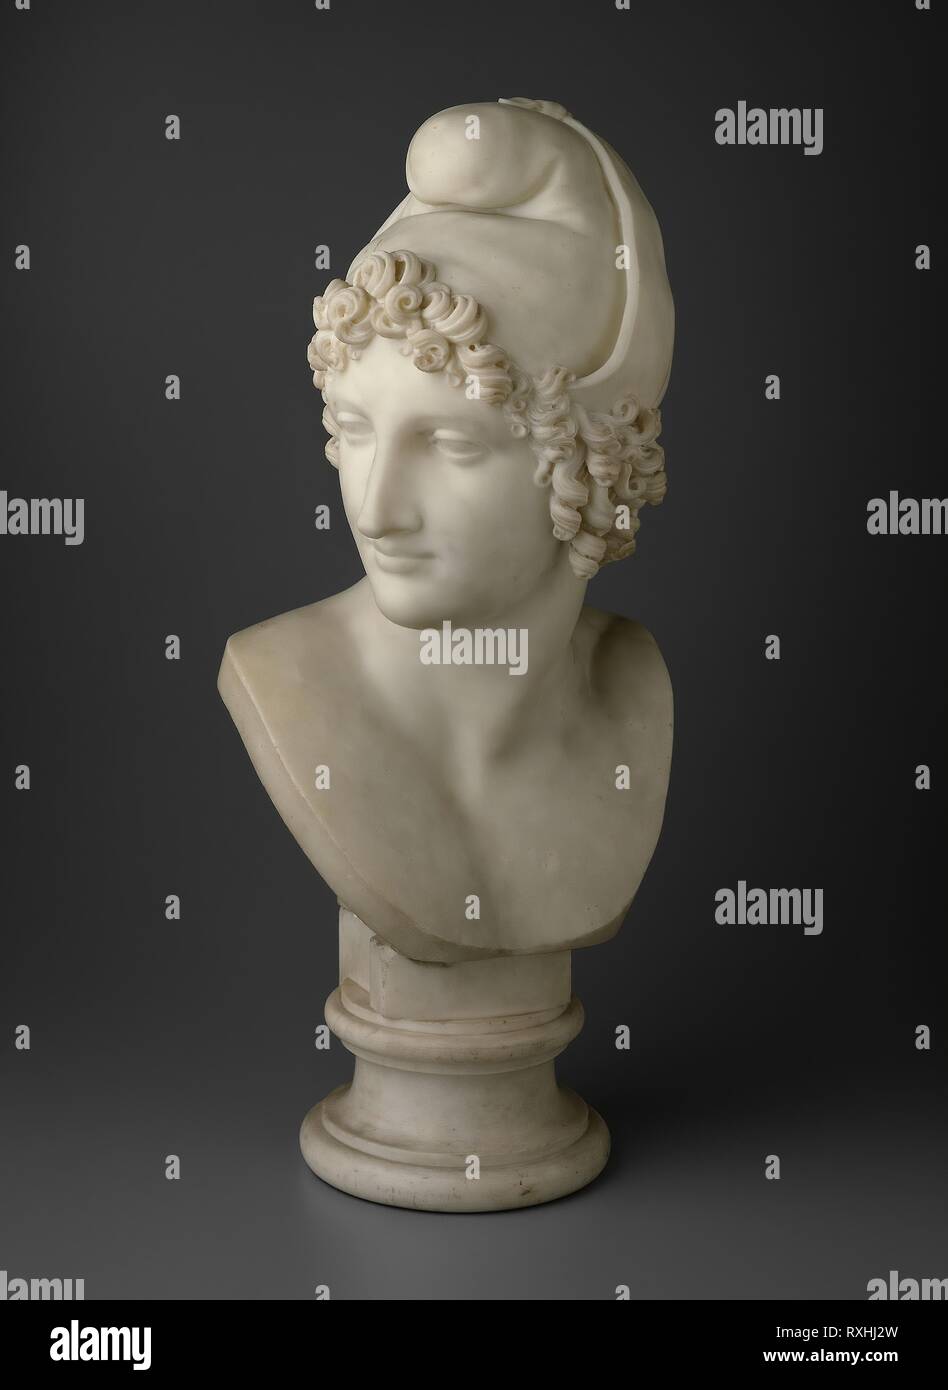 Bust of Paris. Antonio Canova; Italian, 1757-1822. Date: 1809. Dimensions:  H. 66 cm (26 in.). Marble. Origin: Italy. Museum: The Chicago Art Institute  Stock Photo - Alamy